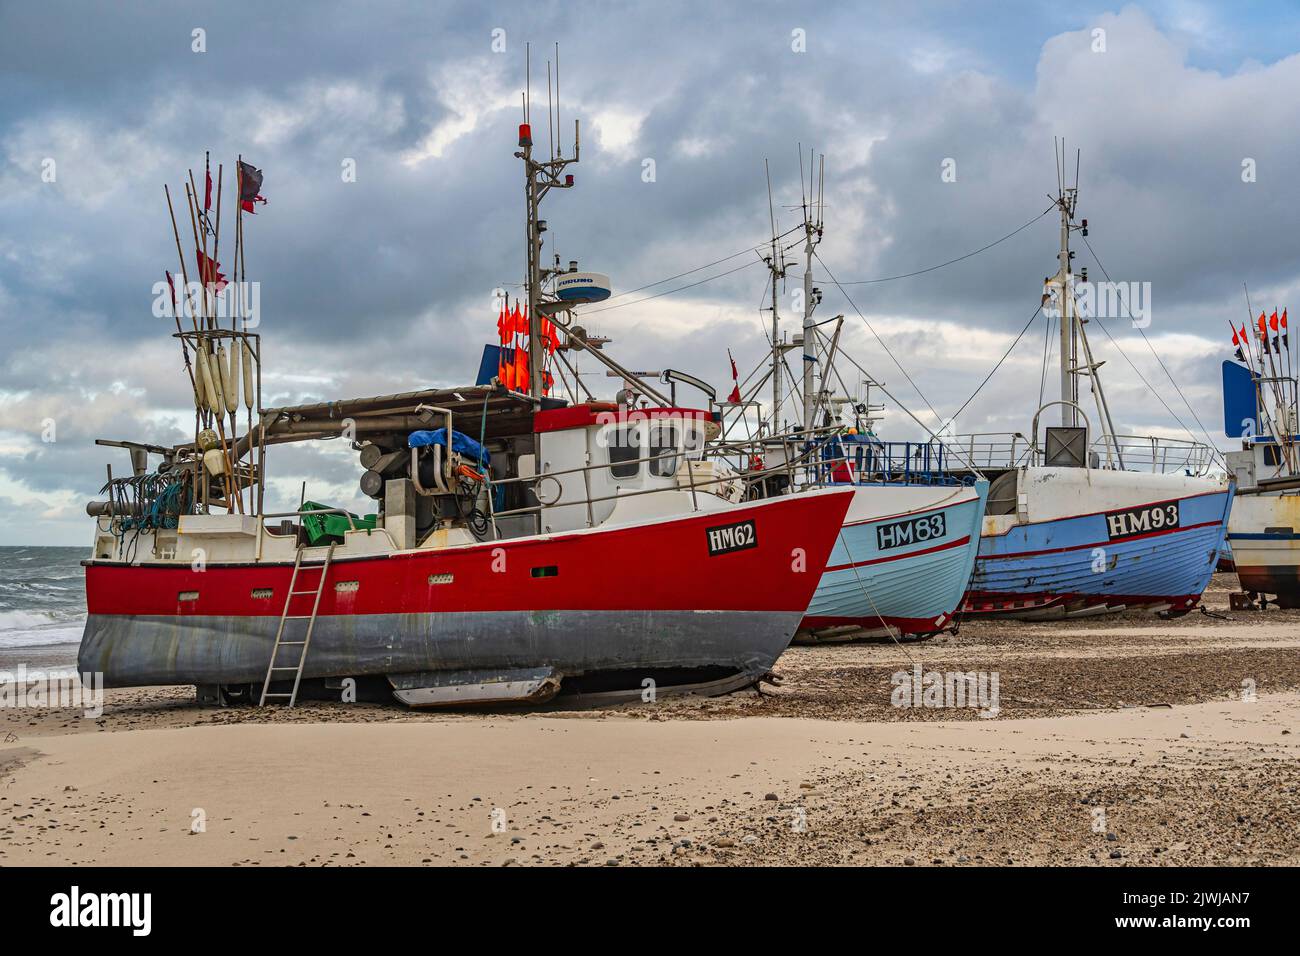 Barche da pesca tirato a riva in attesa della tempesta. Nel piccolo villaggio di pescatori di Thorupstrand, la pesca sostenibile è praticata. Jammerbugt, Danimarca Foto Stock